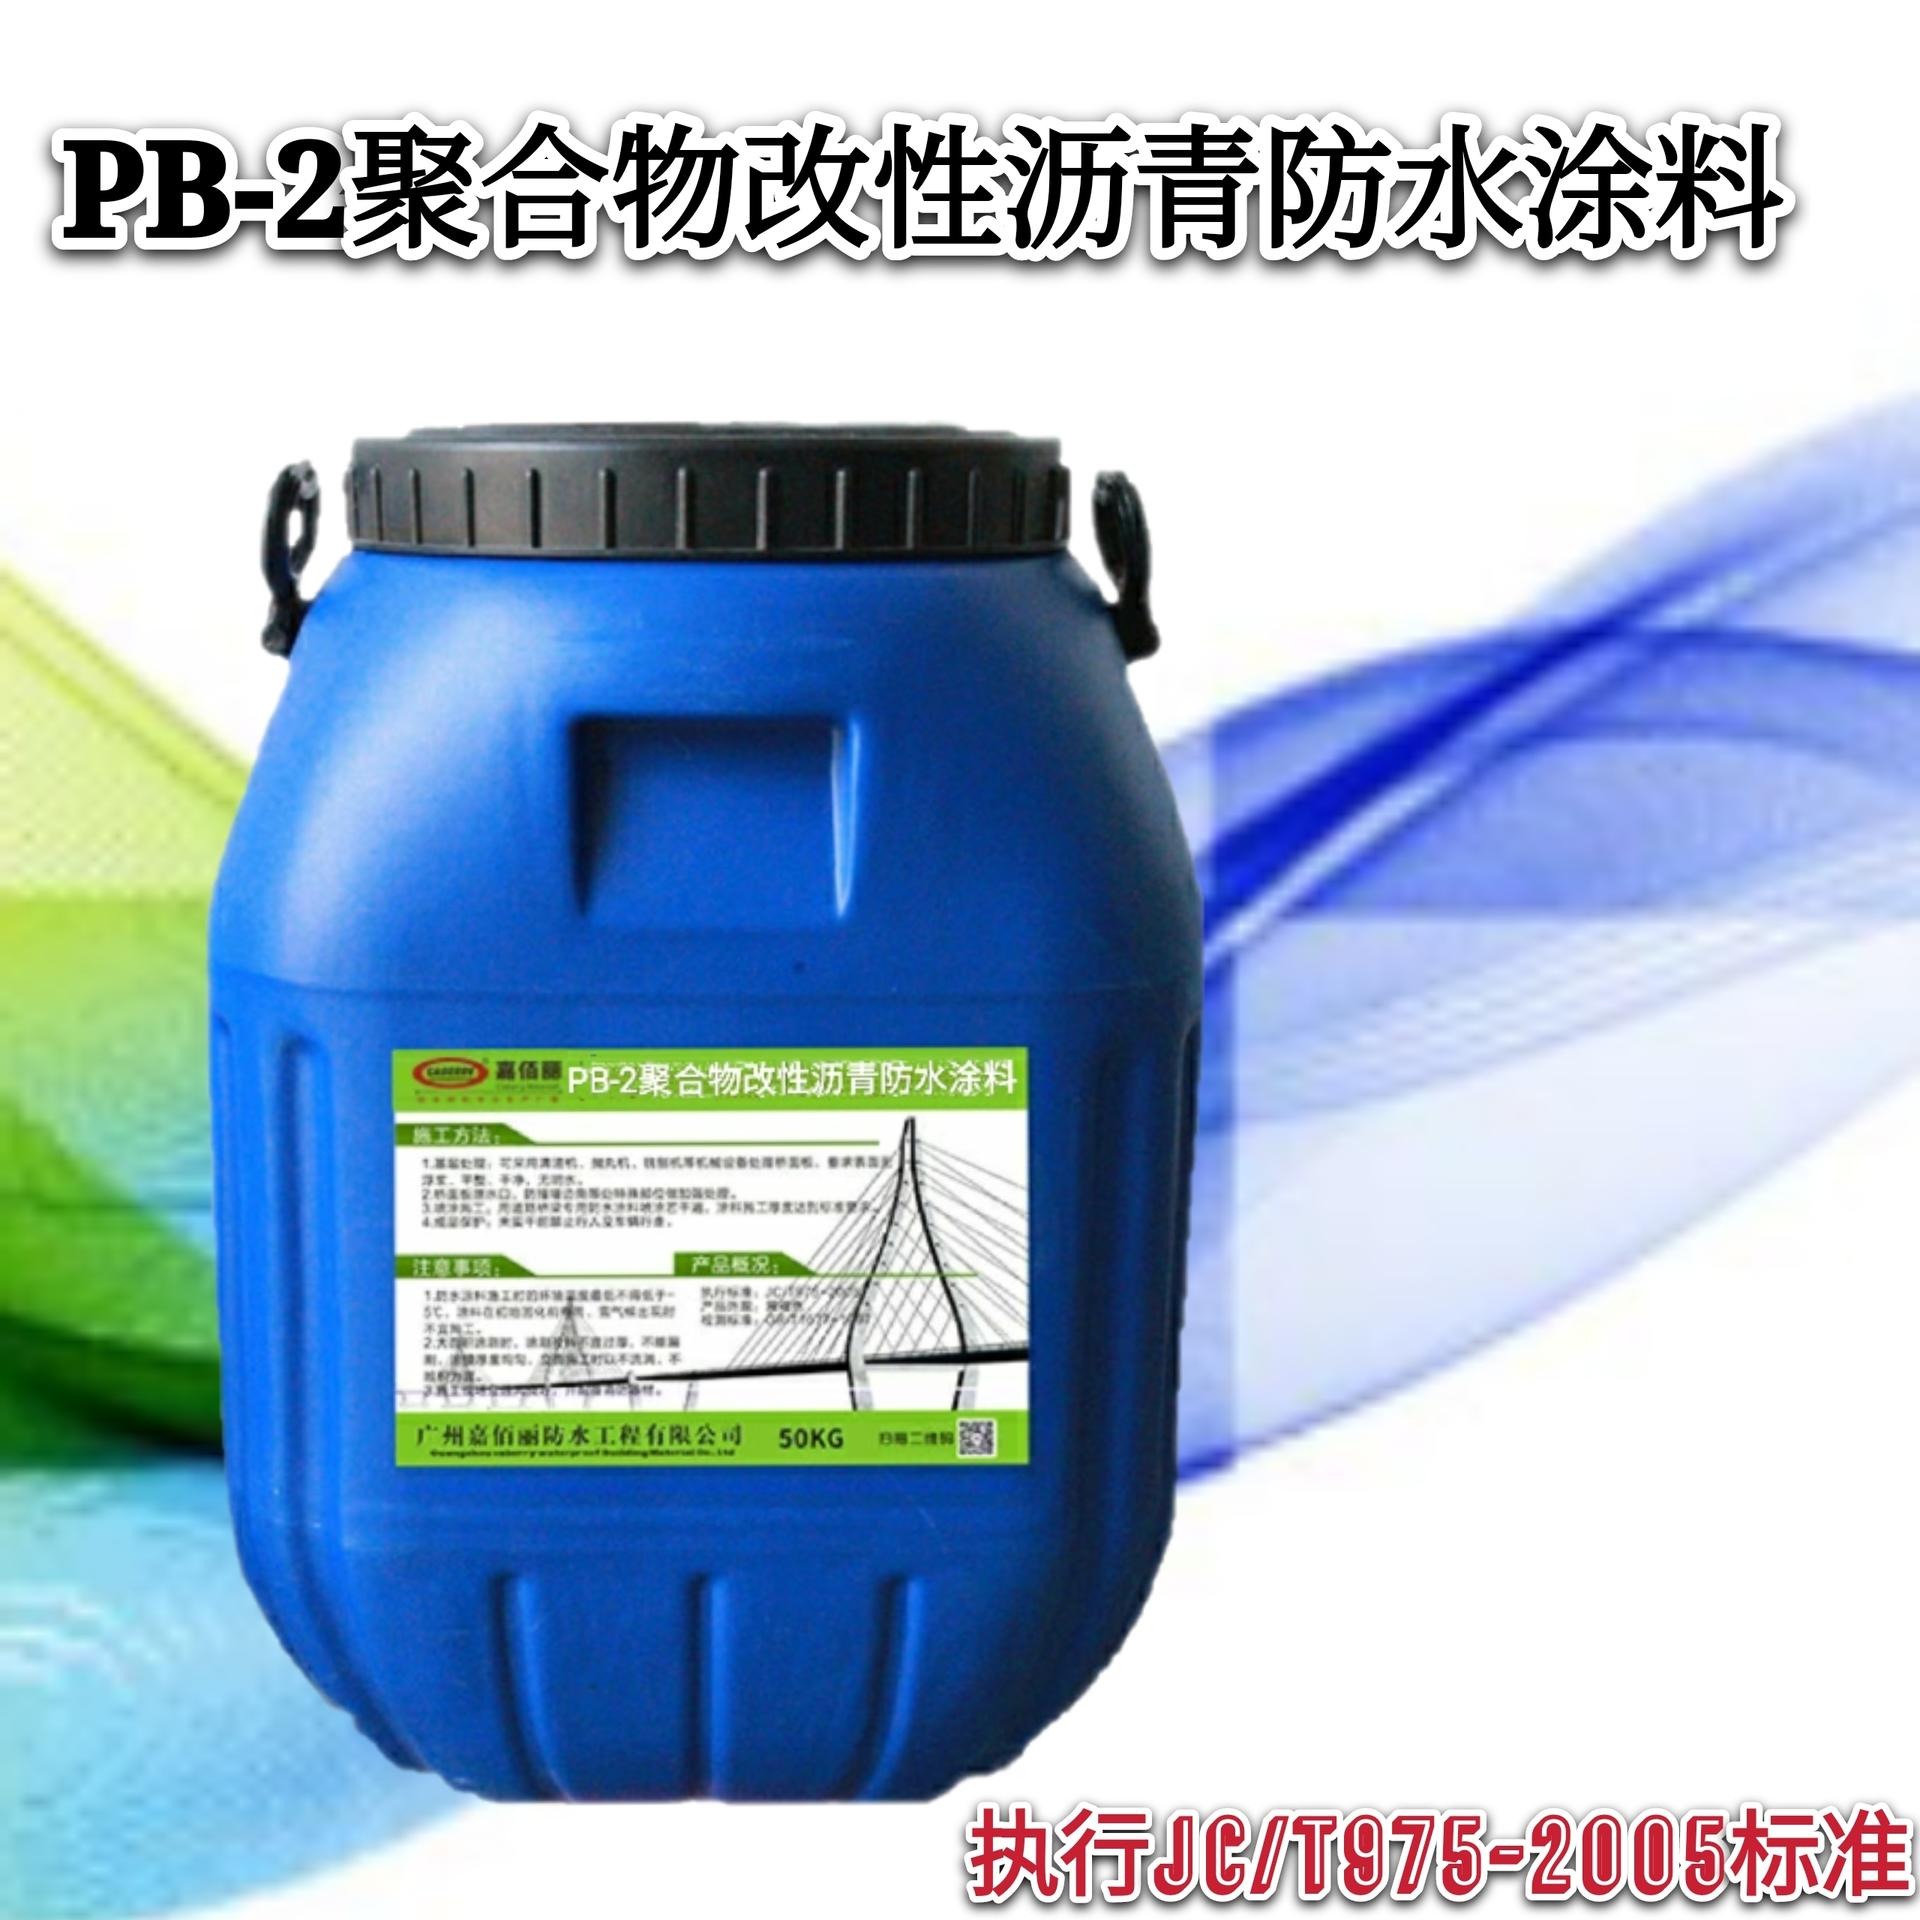 PB-2聚合物改性沥青桥面防水涂料 路桥防水 超低货源